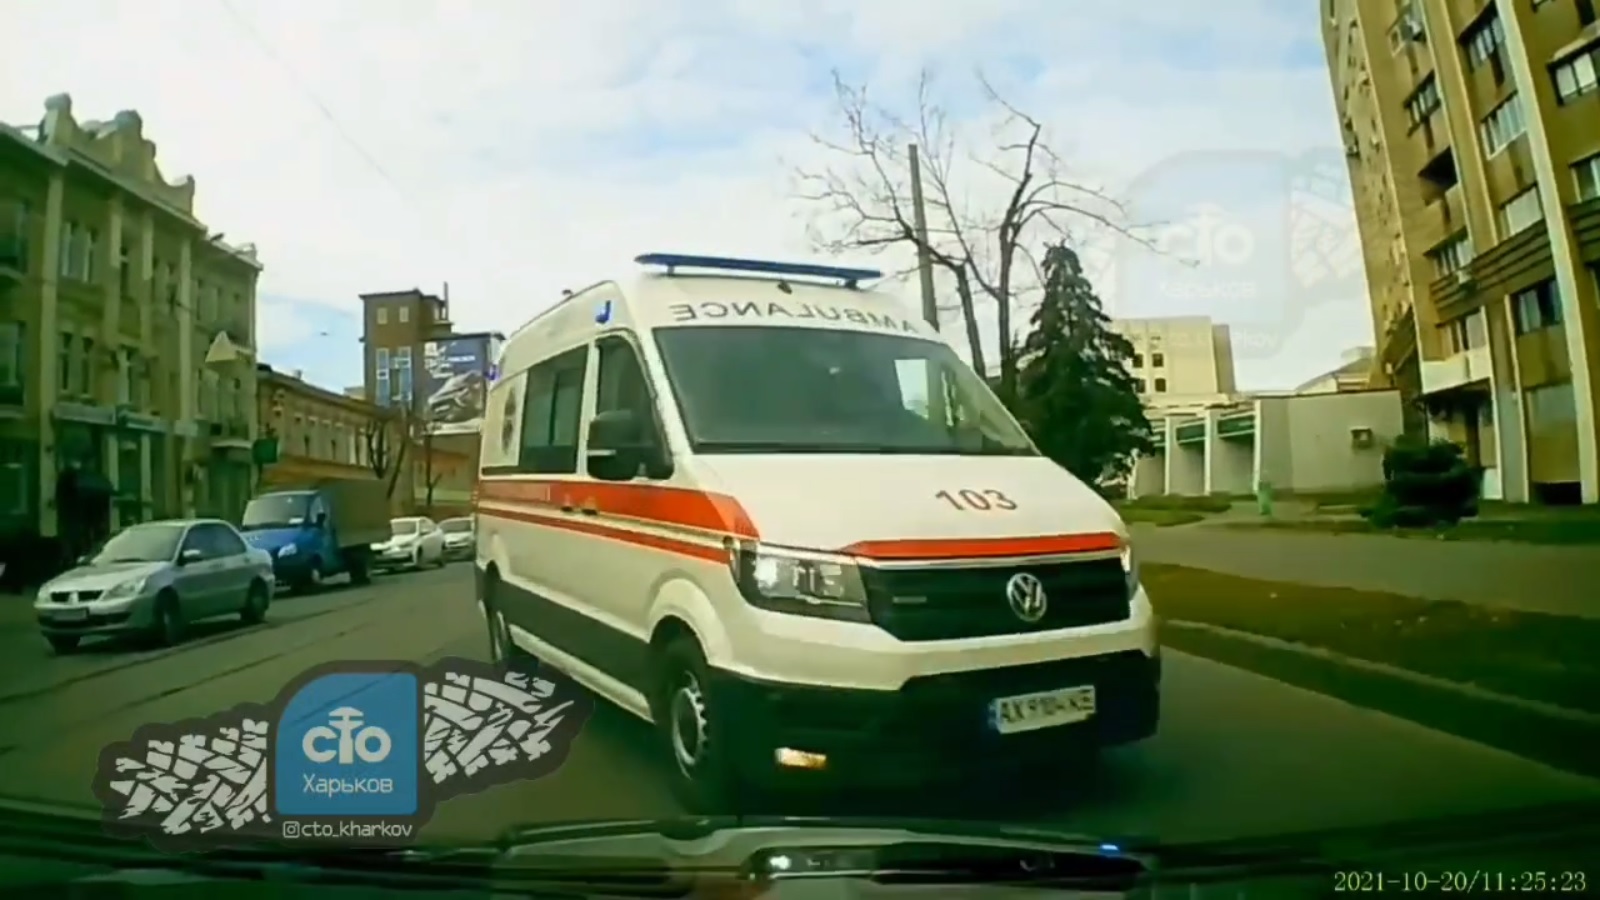 ДТП Харьков: Момент аварии микроавтобуса и "скорой помощи" на Московском проспекте